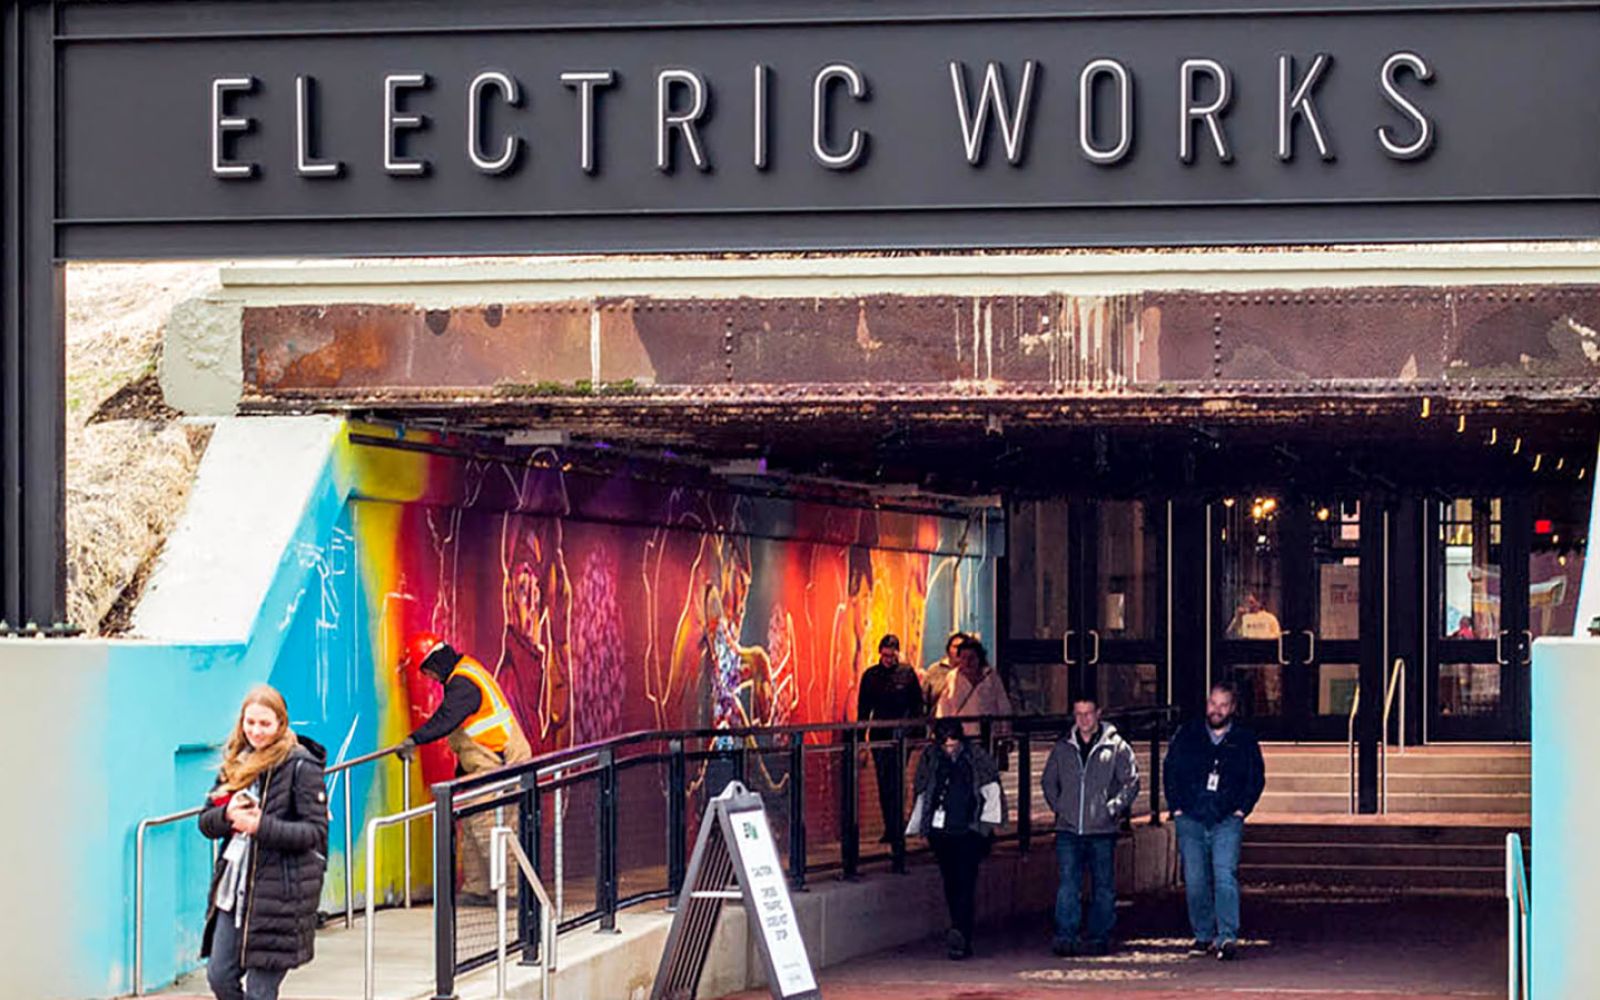 Electric Works is seeking a muralist.